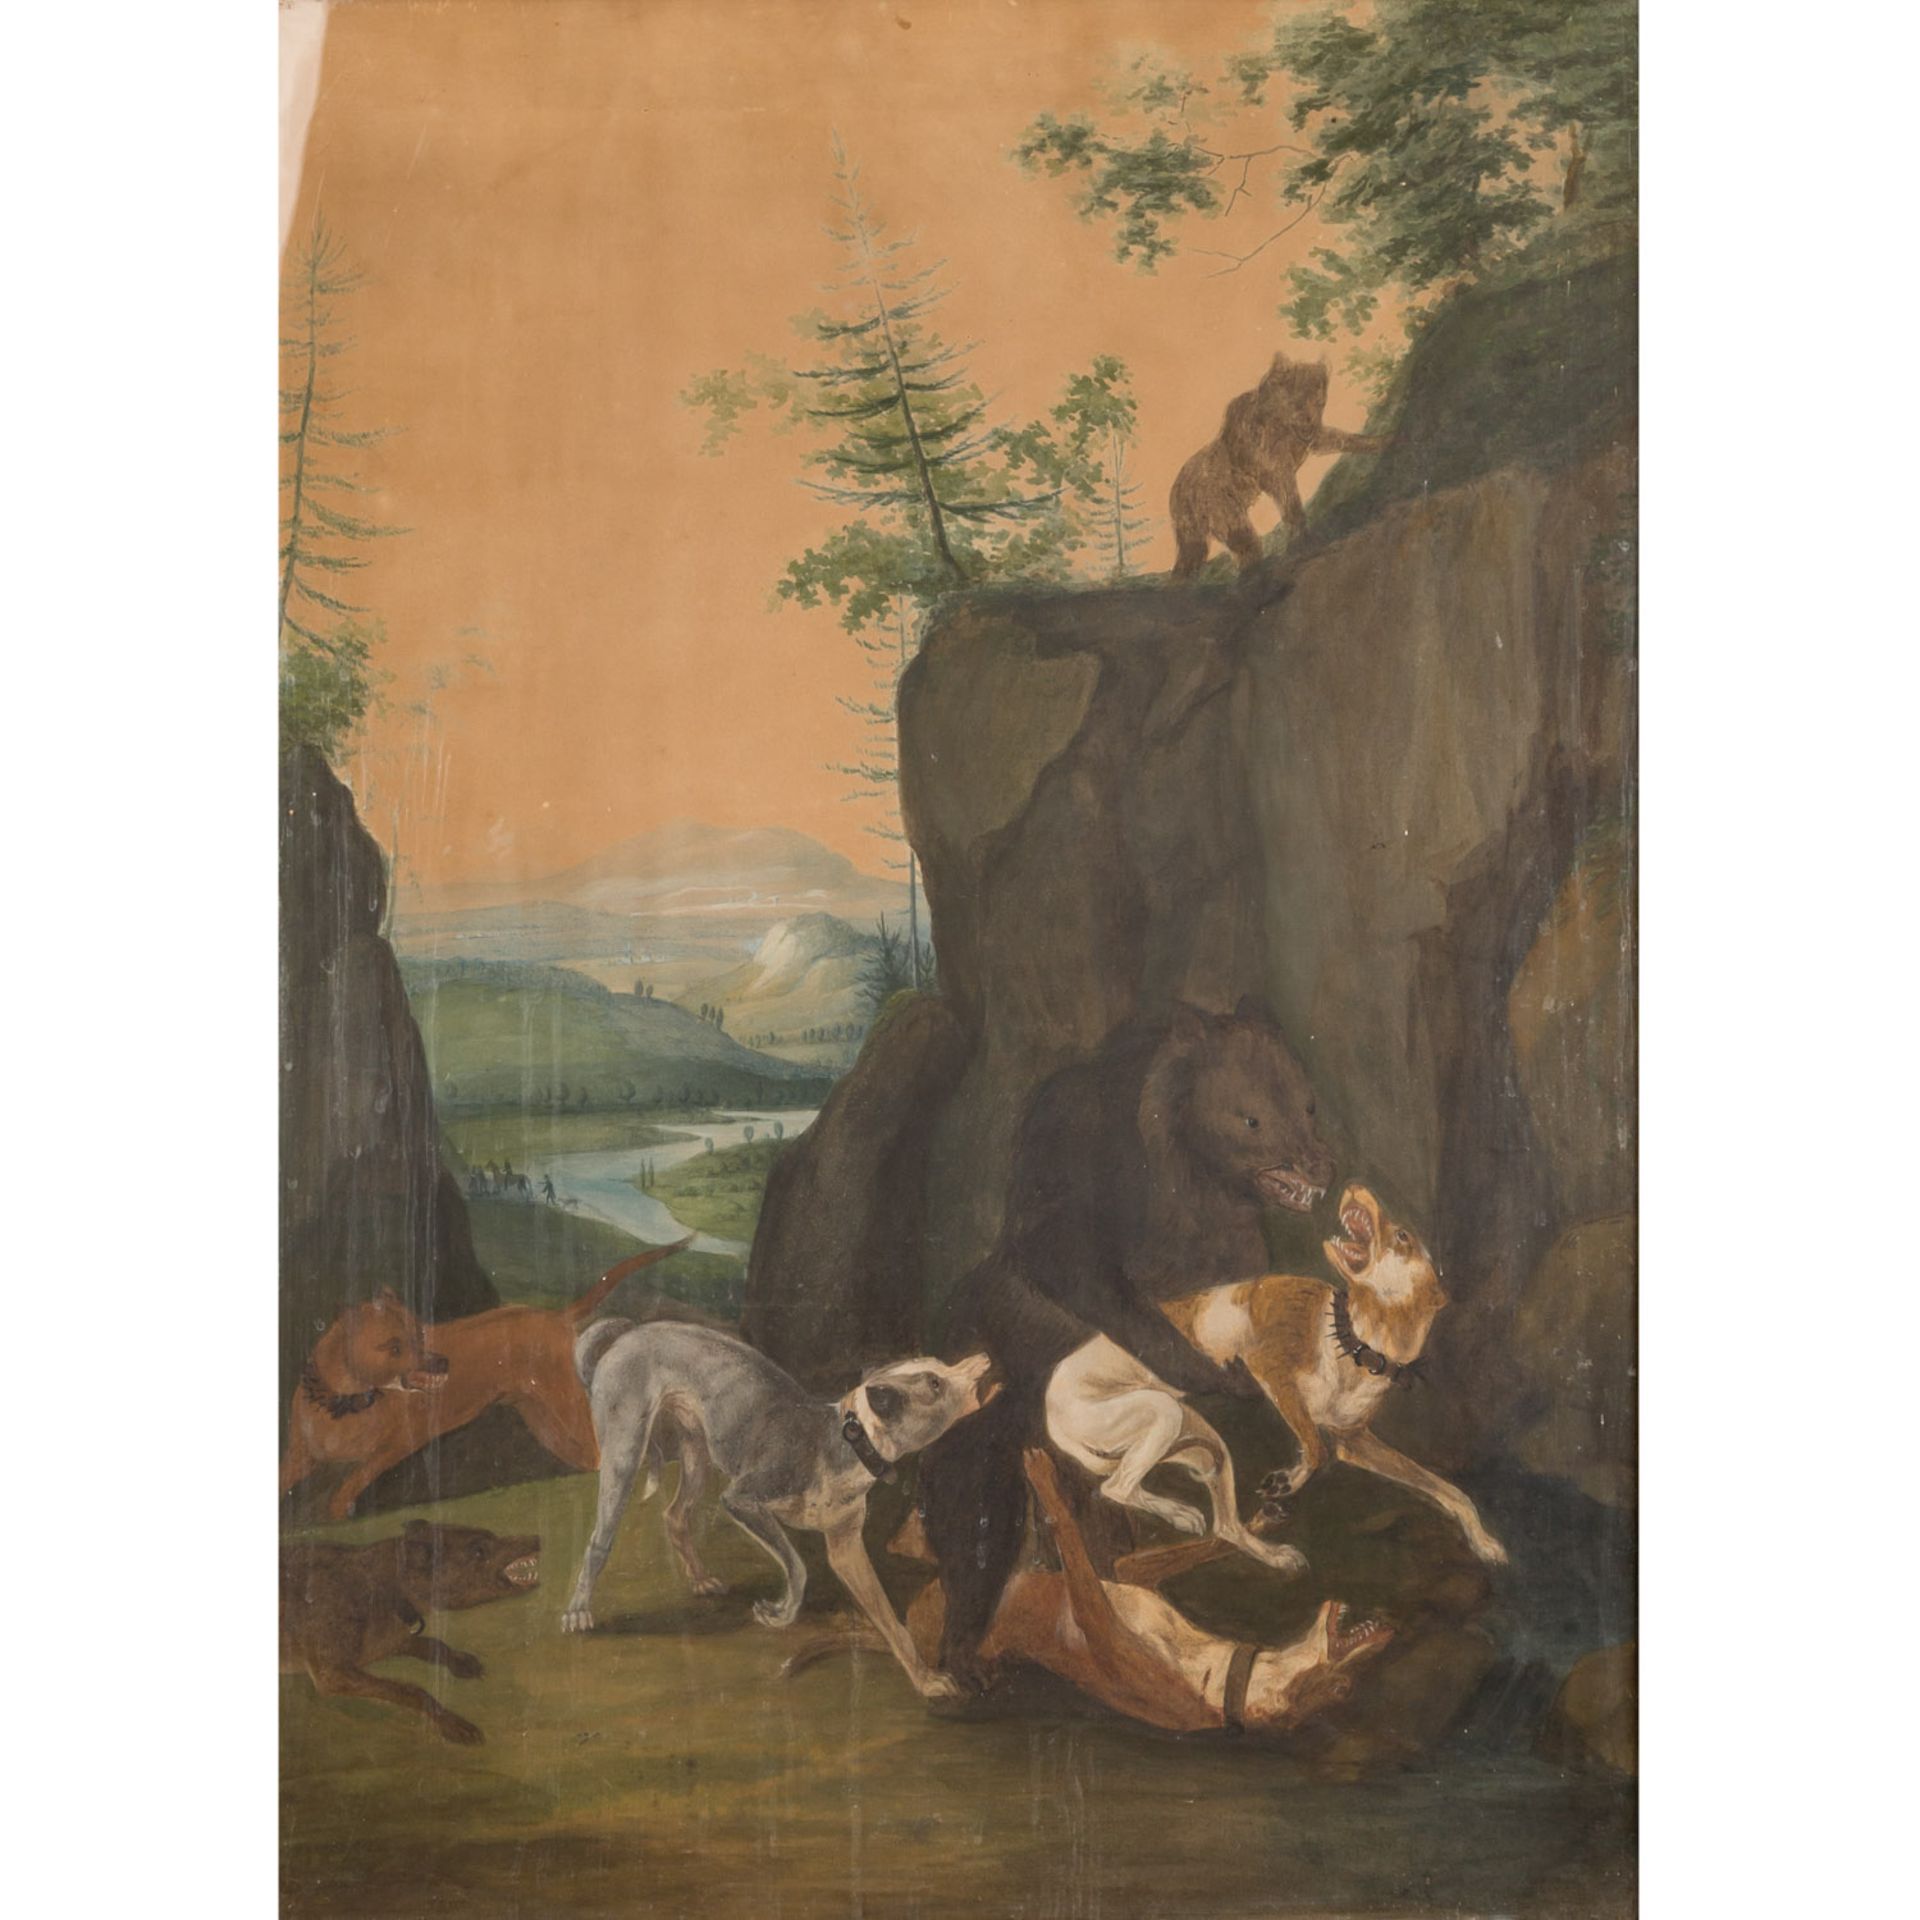 KÜNSTLER/IN 18. Jh., "Bärenhatz zwischen Felsen",Bär im Kampf mit Jagdhunden, im Hintergrund weite